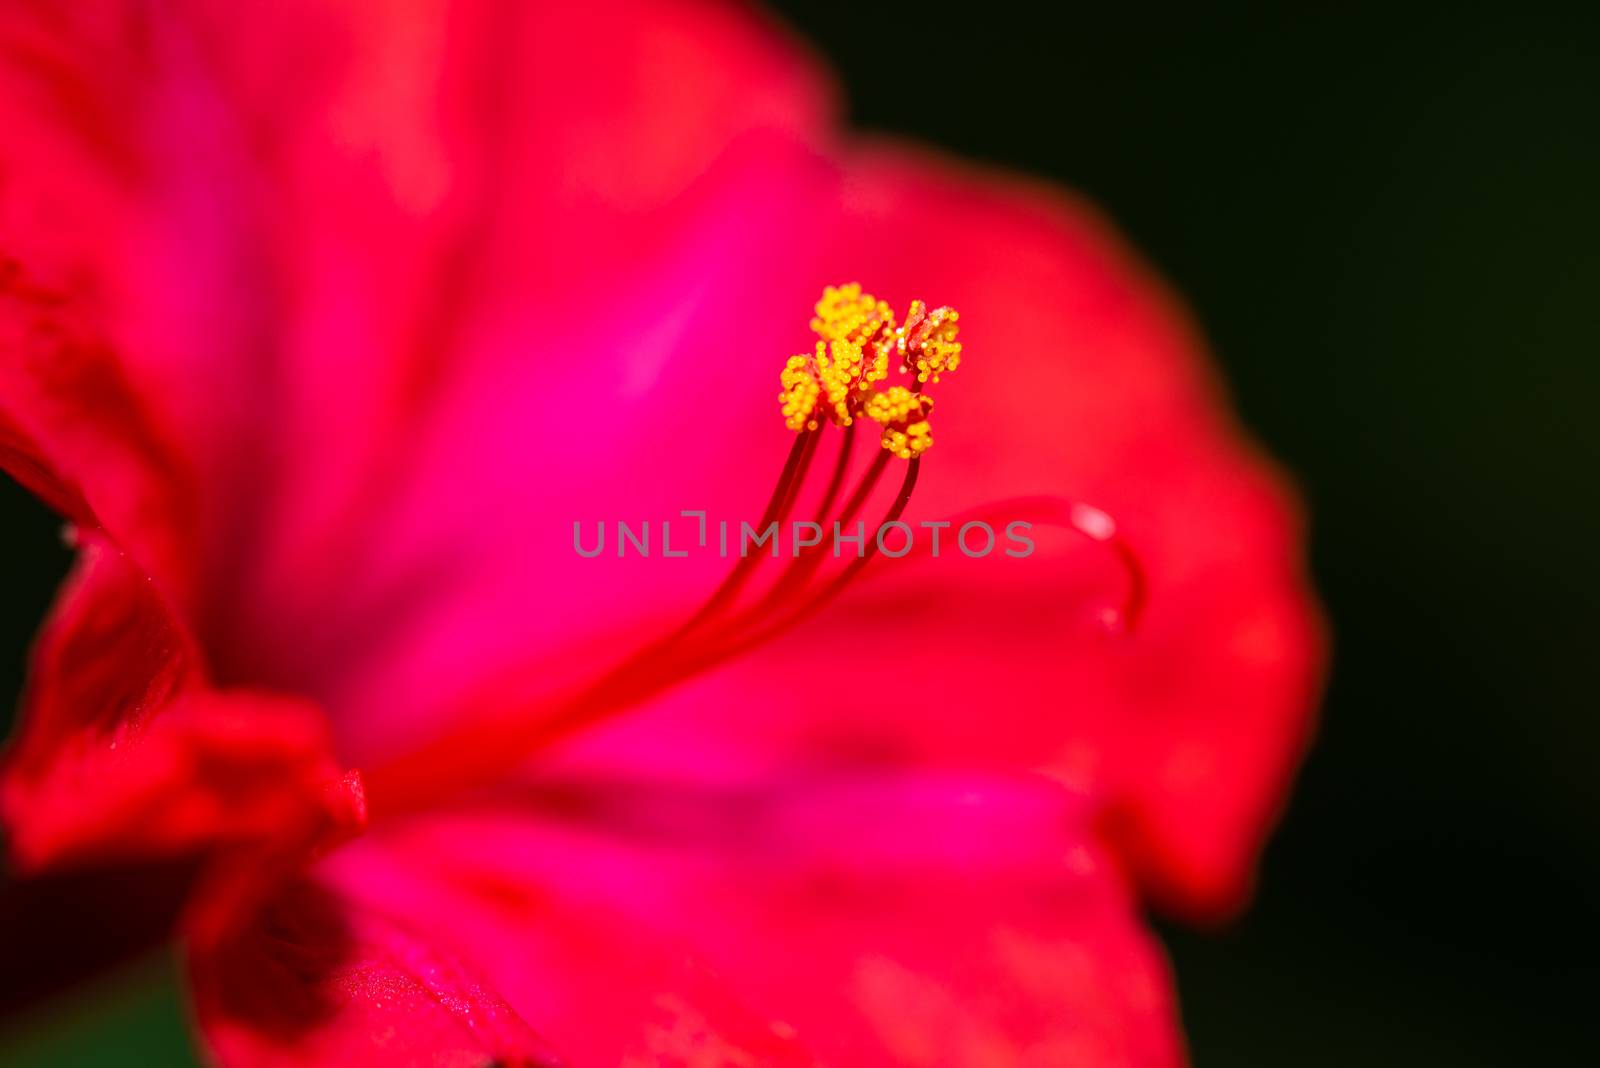 Red four o'clock flower (Mirabilis Jalapa) macro shot